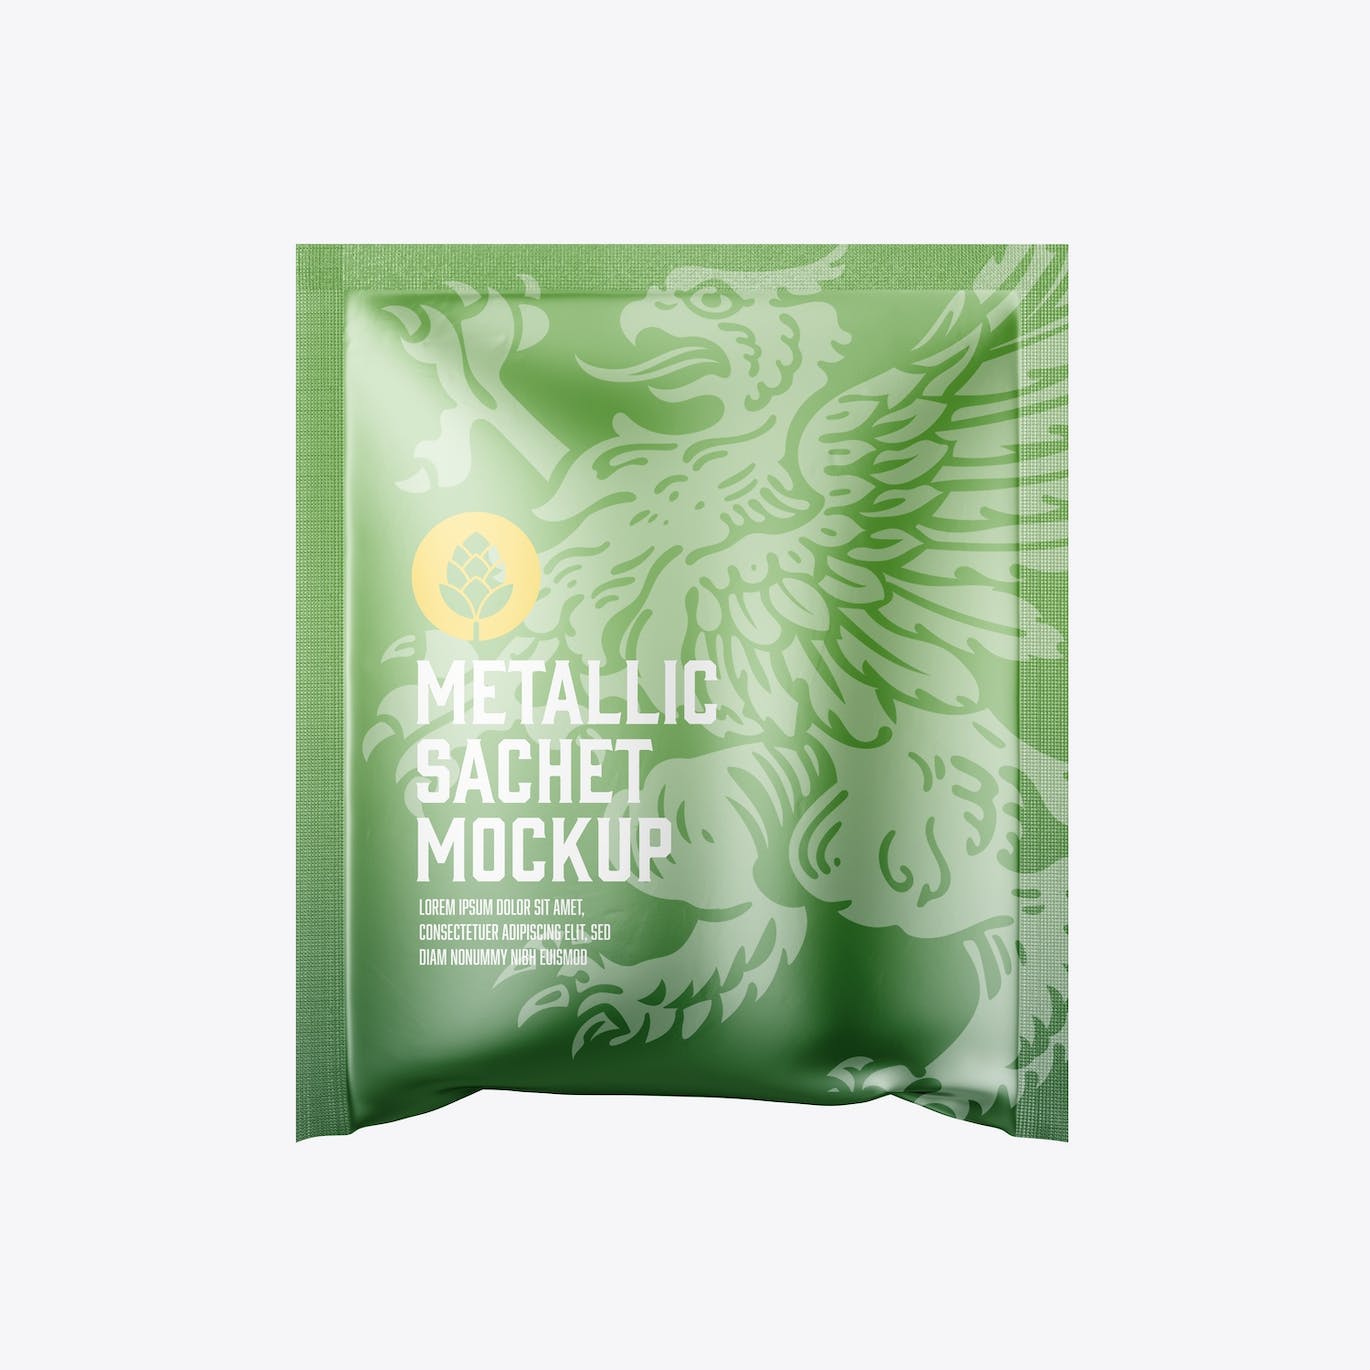 金属材质包装袋设计样机图 Metallic Sachet Mockup 样机素材 第5张